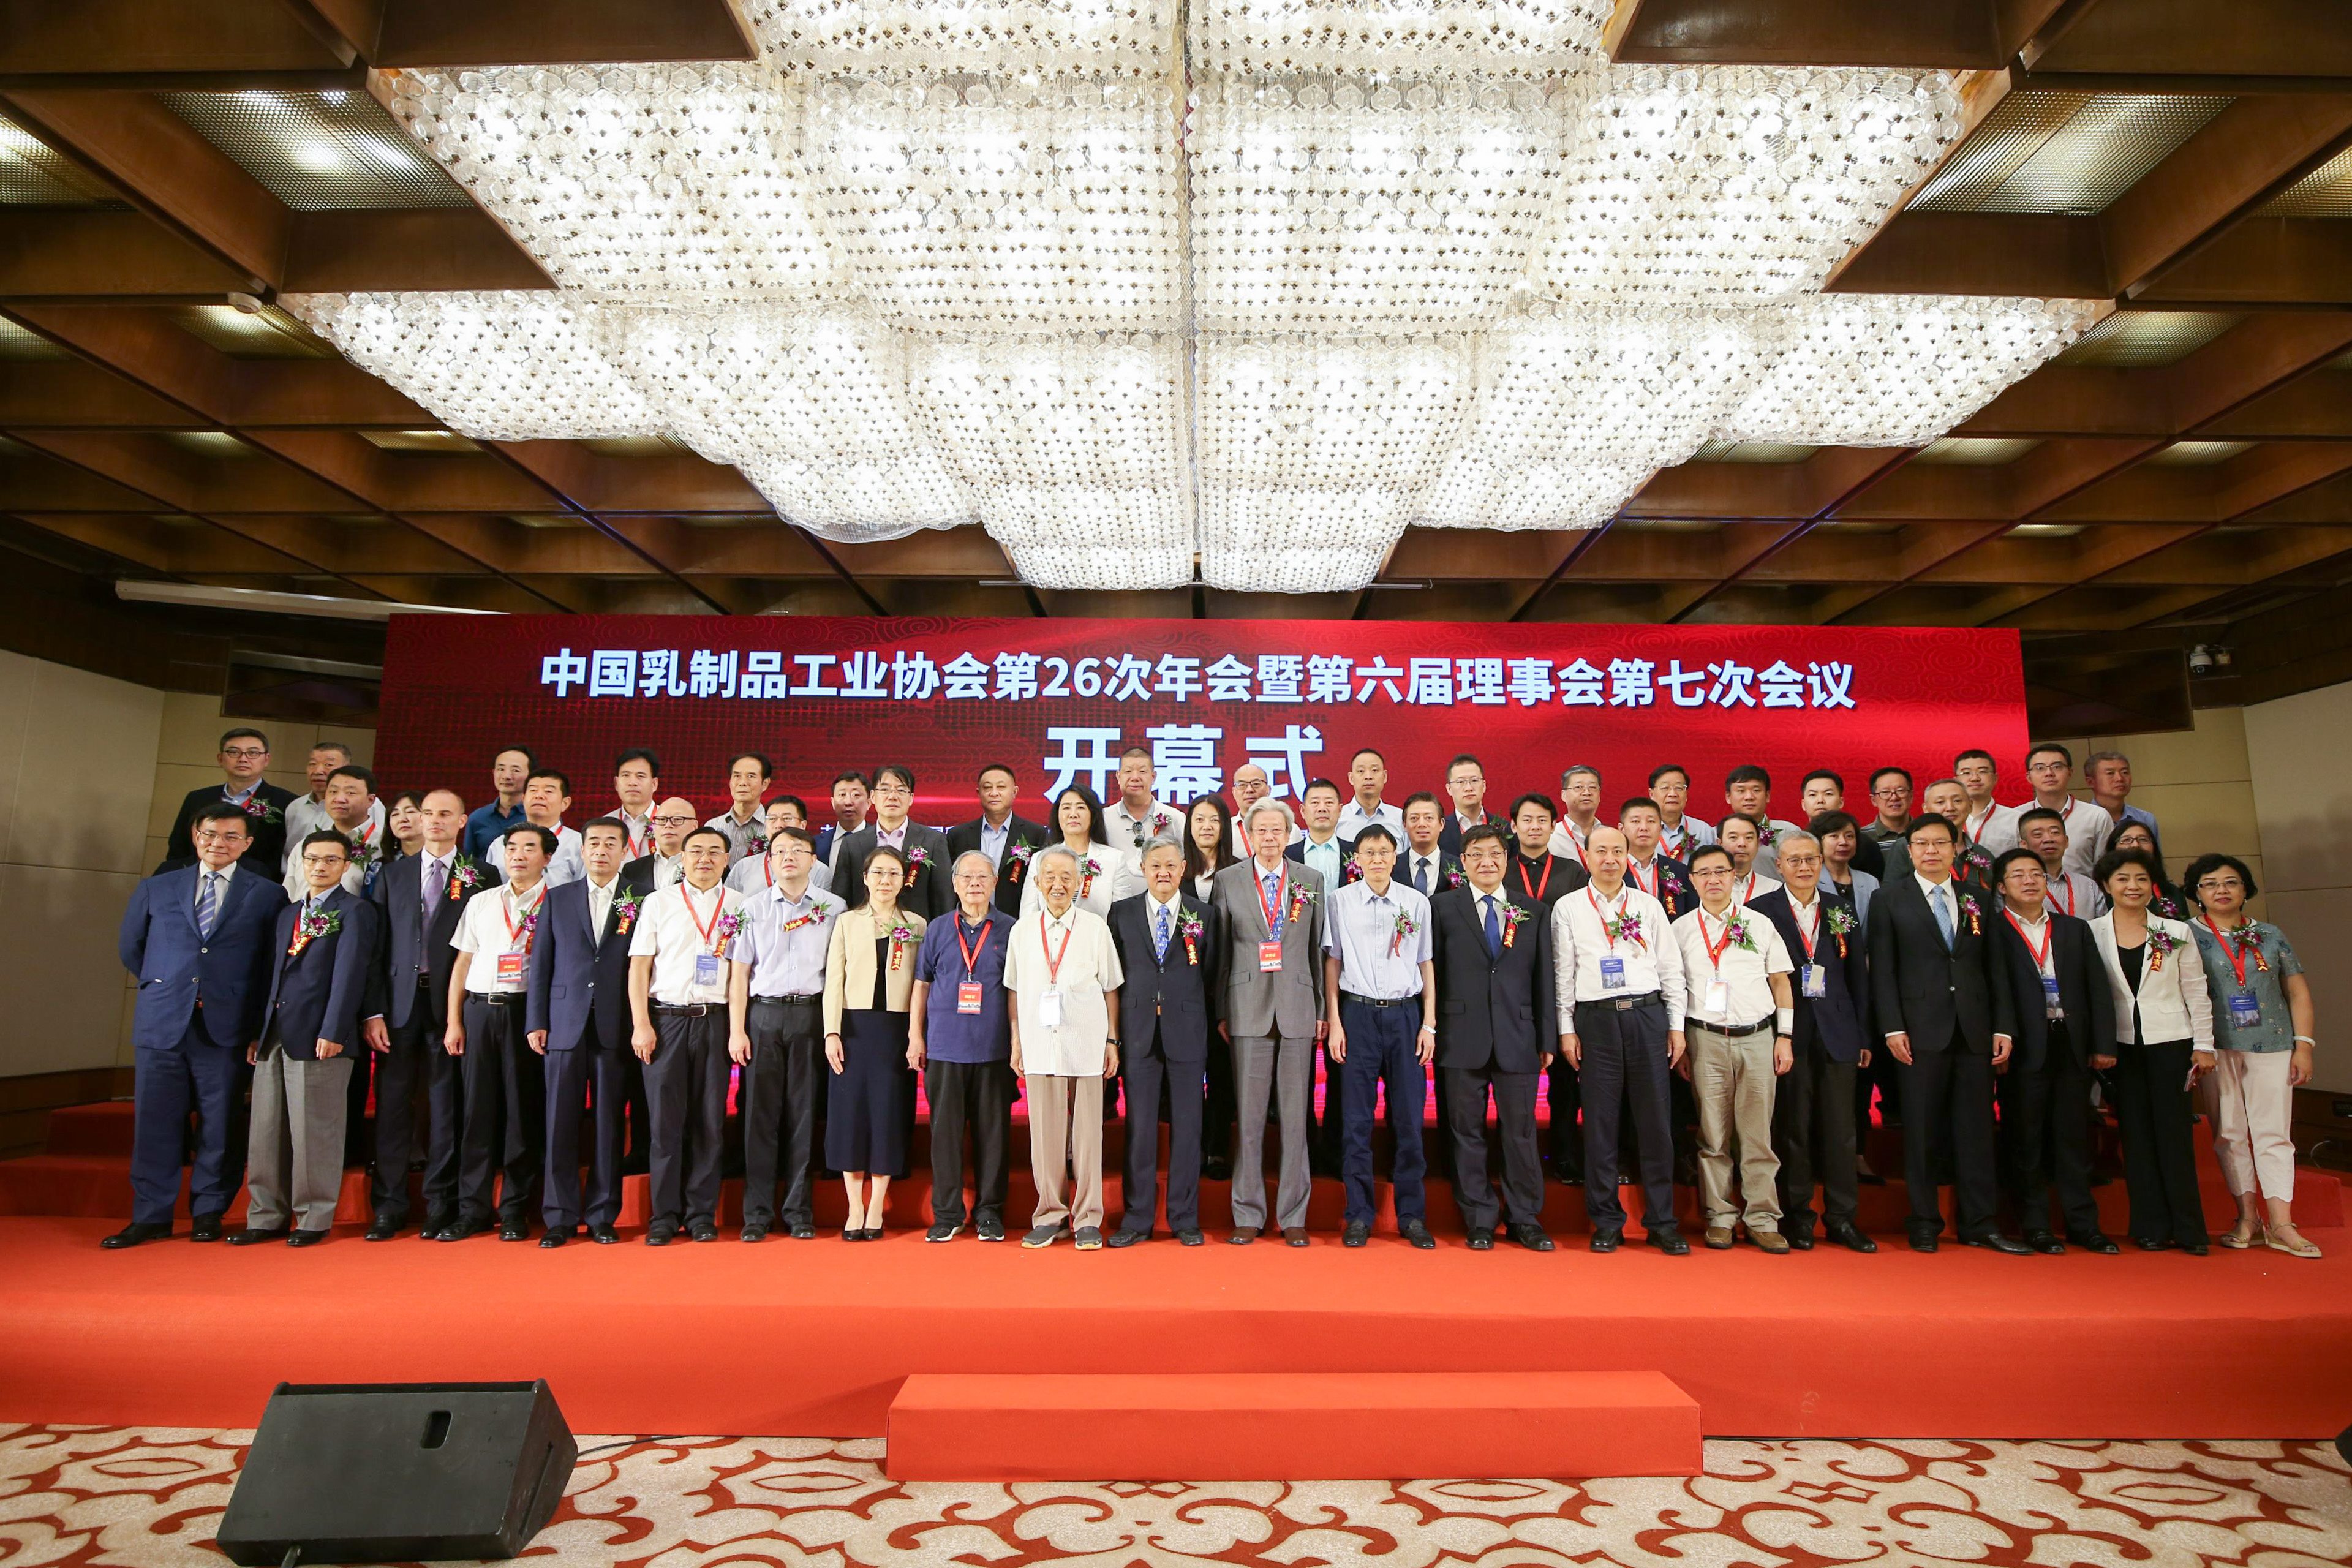 皇氏集团荣获“中国乳业精神模范企业”称号和多项大奖，企业实力再获肯定